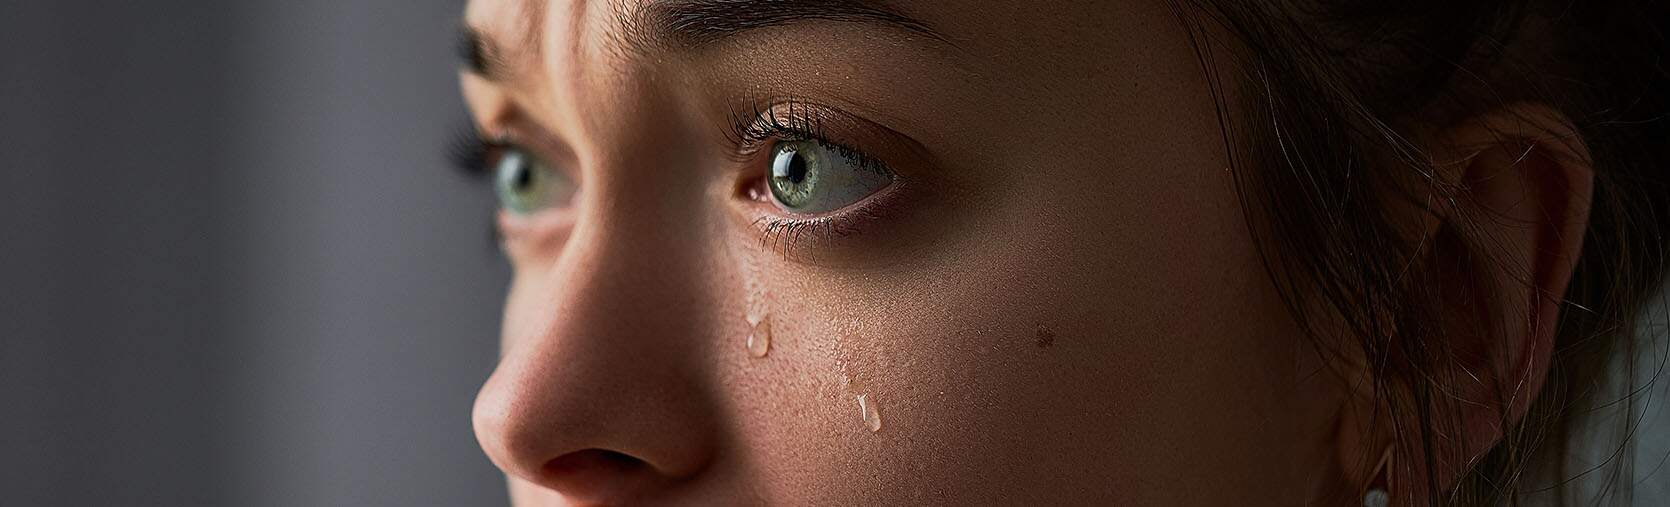 Een huilende vrouw met tranen op haar wangen